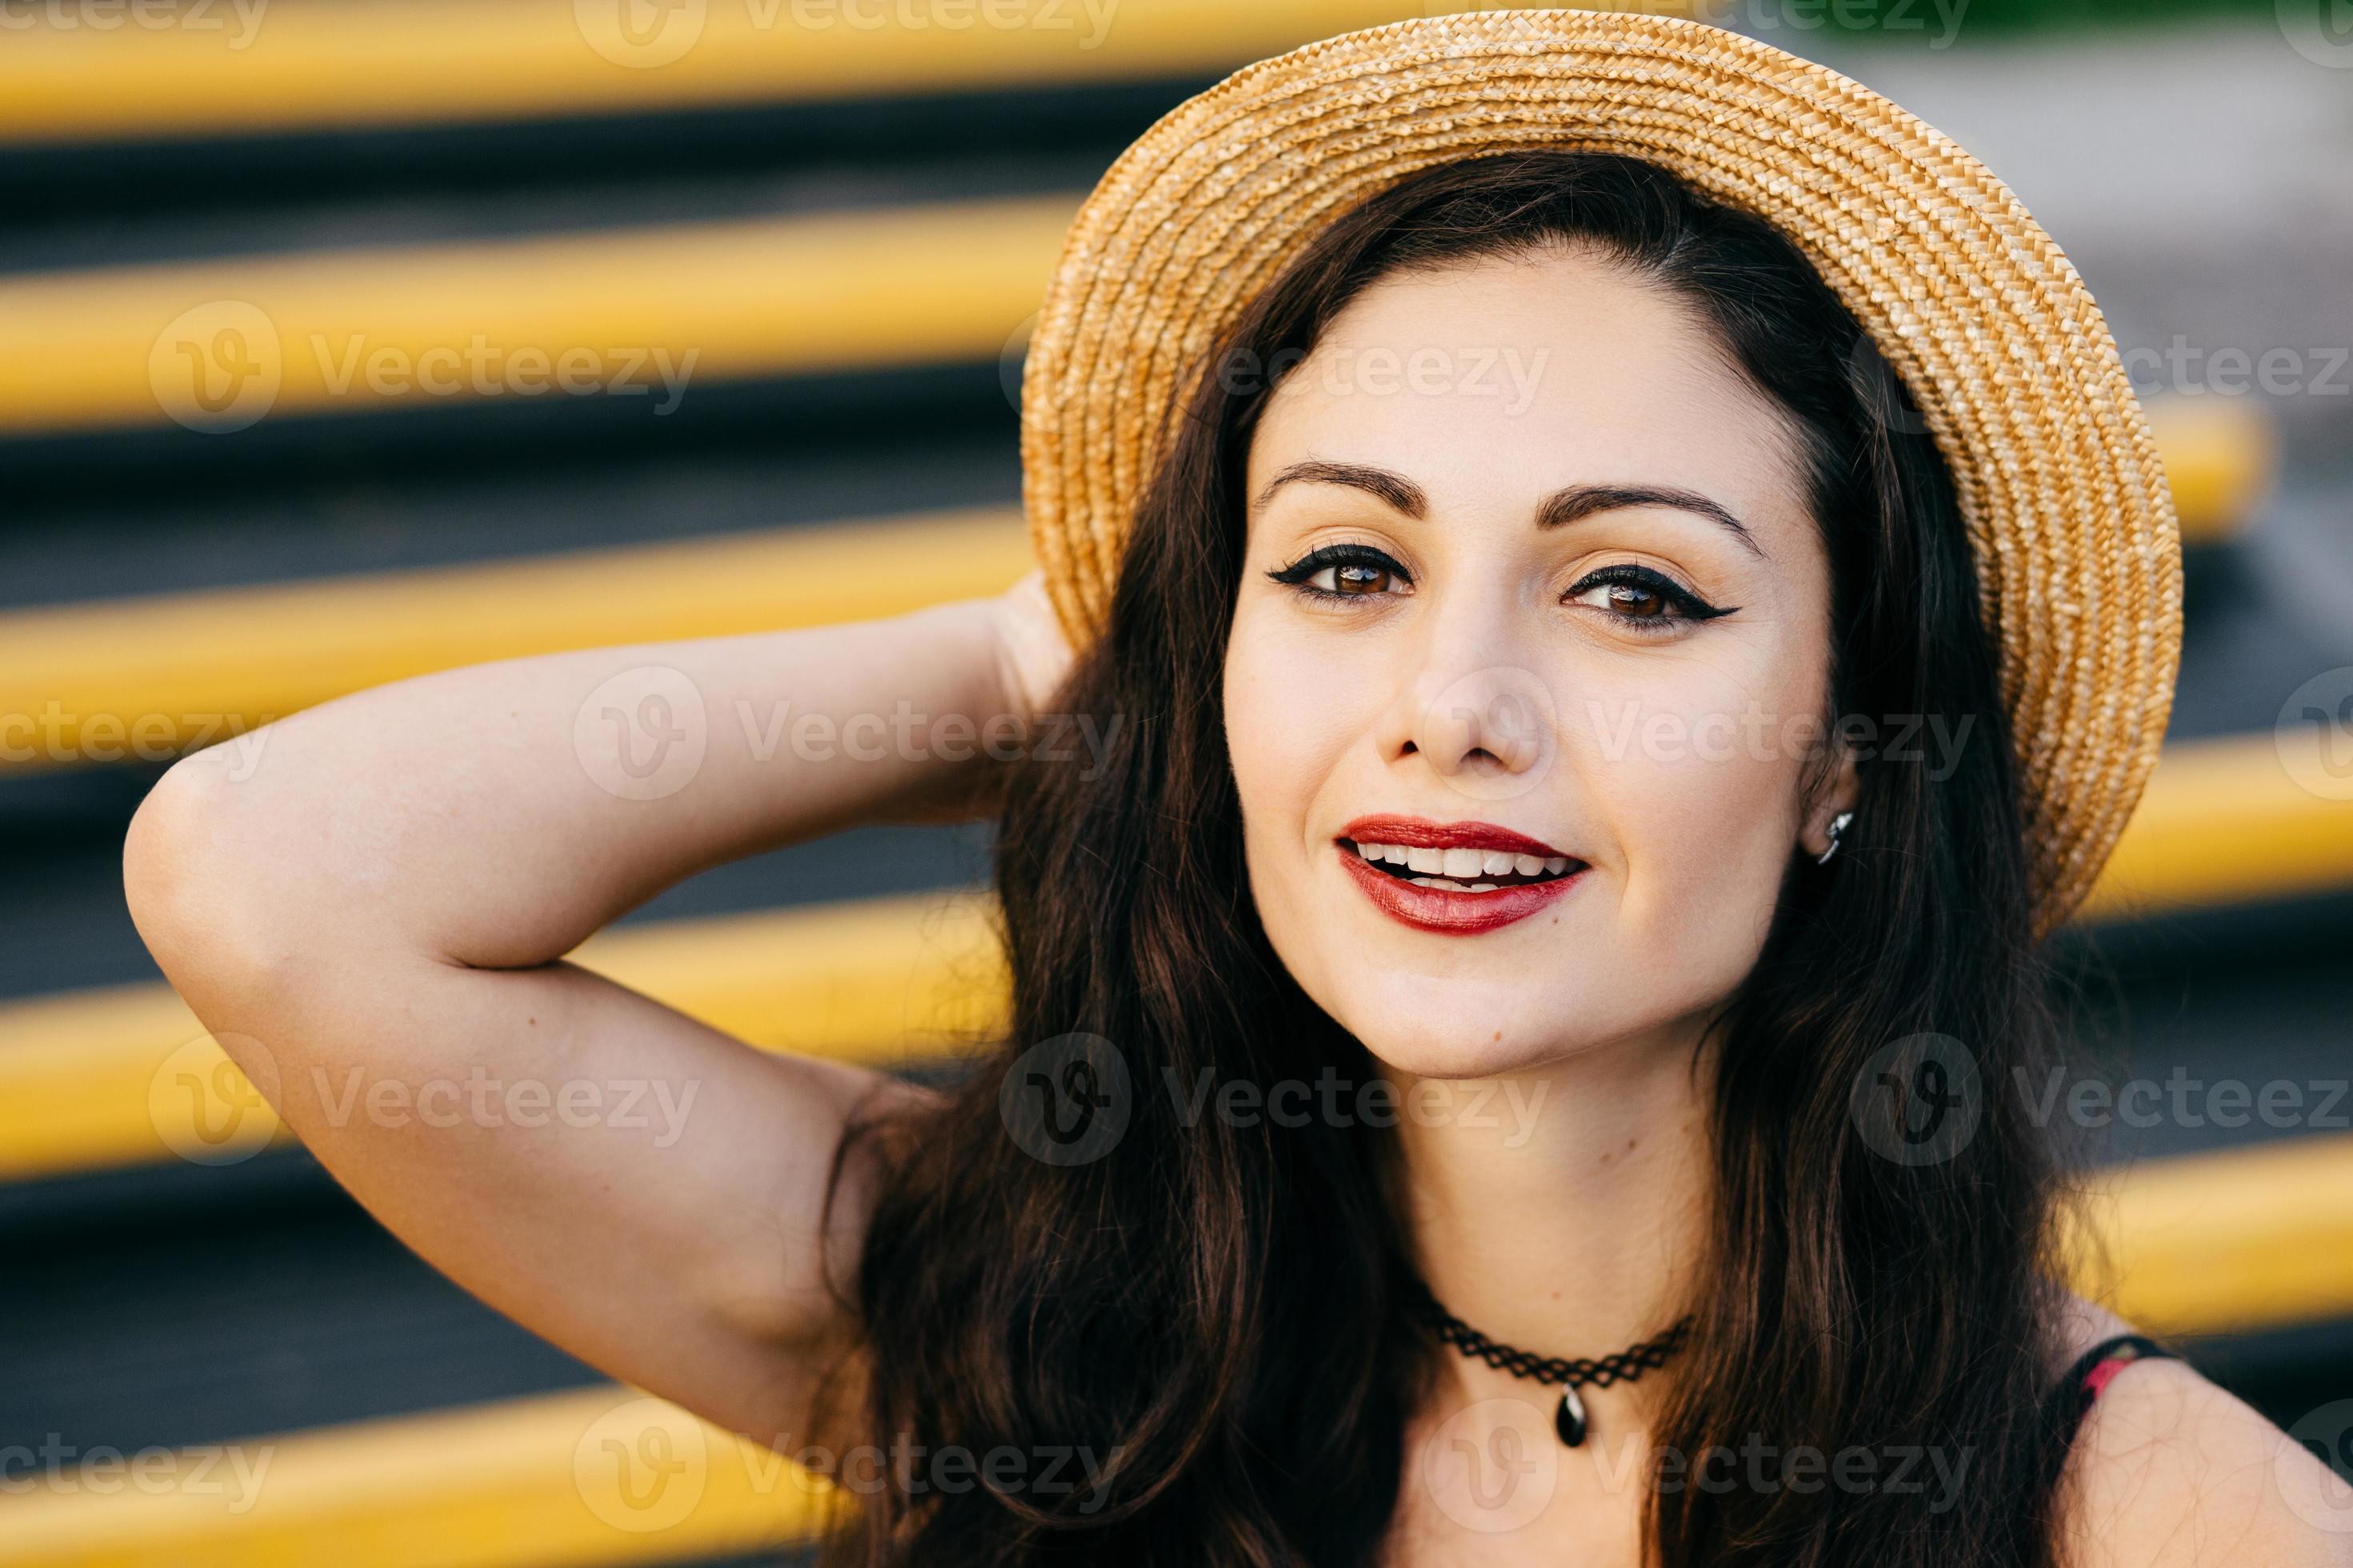 bella donna con i capelli scuri, occhi brillanti e labbra dipinte di rosso  che guarda con sicurezza e con un sorriso alla telecamera che indossa  cappello di paglia e collana sul collo.